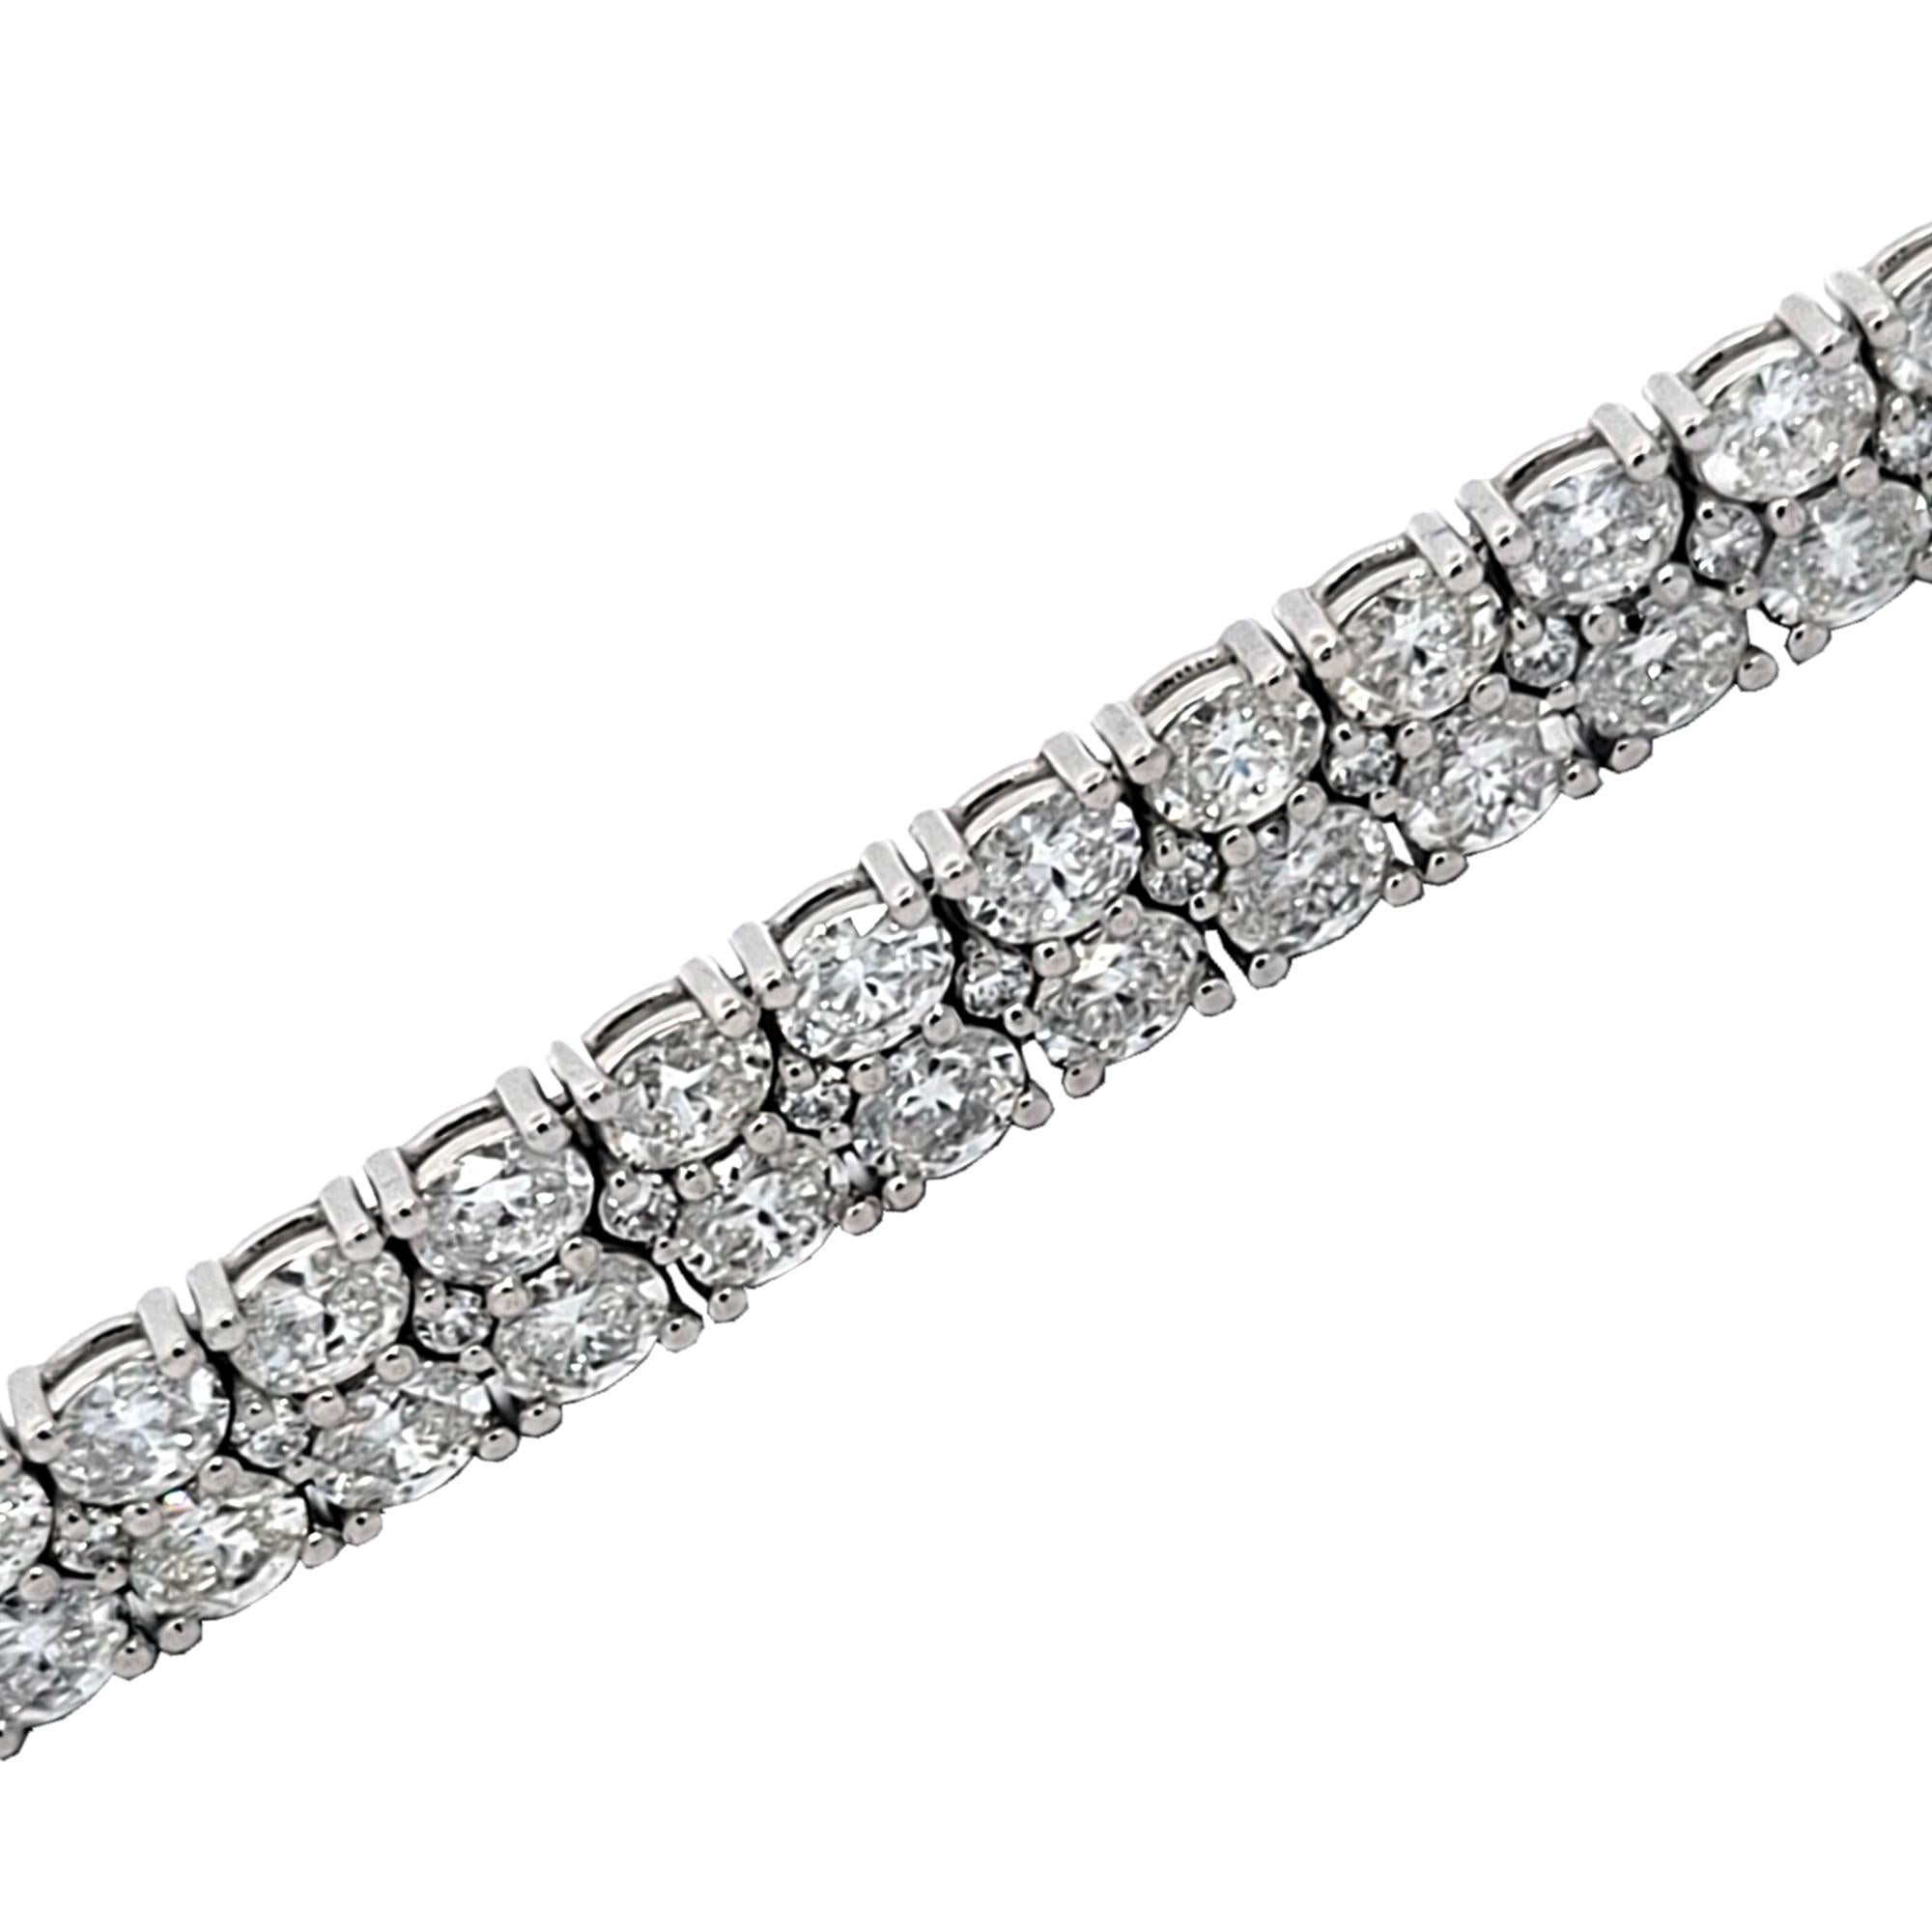 Dieses elegante Diamant-Tennisarmband besteht aus 41 Gliedern mit doppelreihigen ovalen/runden Brillanten, die in Platin gefasst sind. Er ist 7 Zoll lang und etwa 7 mm breit.  Dieses Armband ist von höchster handwerklicher Qualität, was es extrem